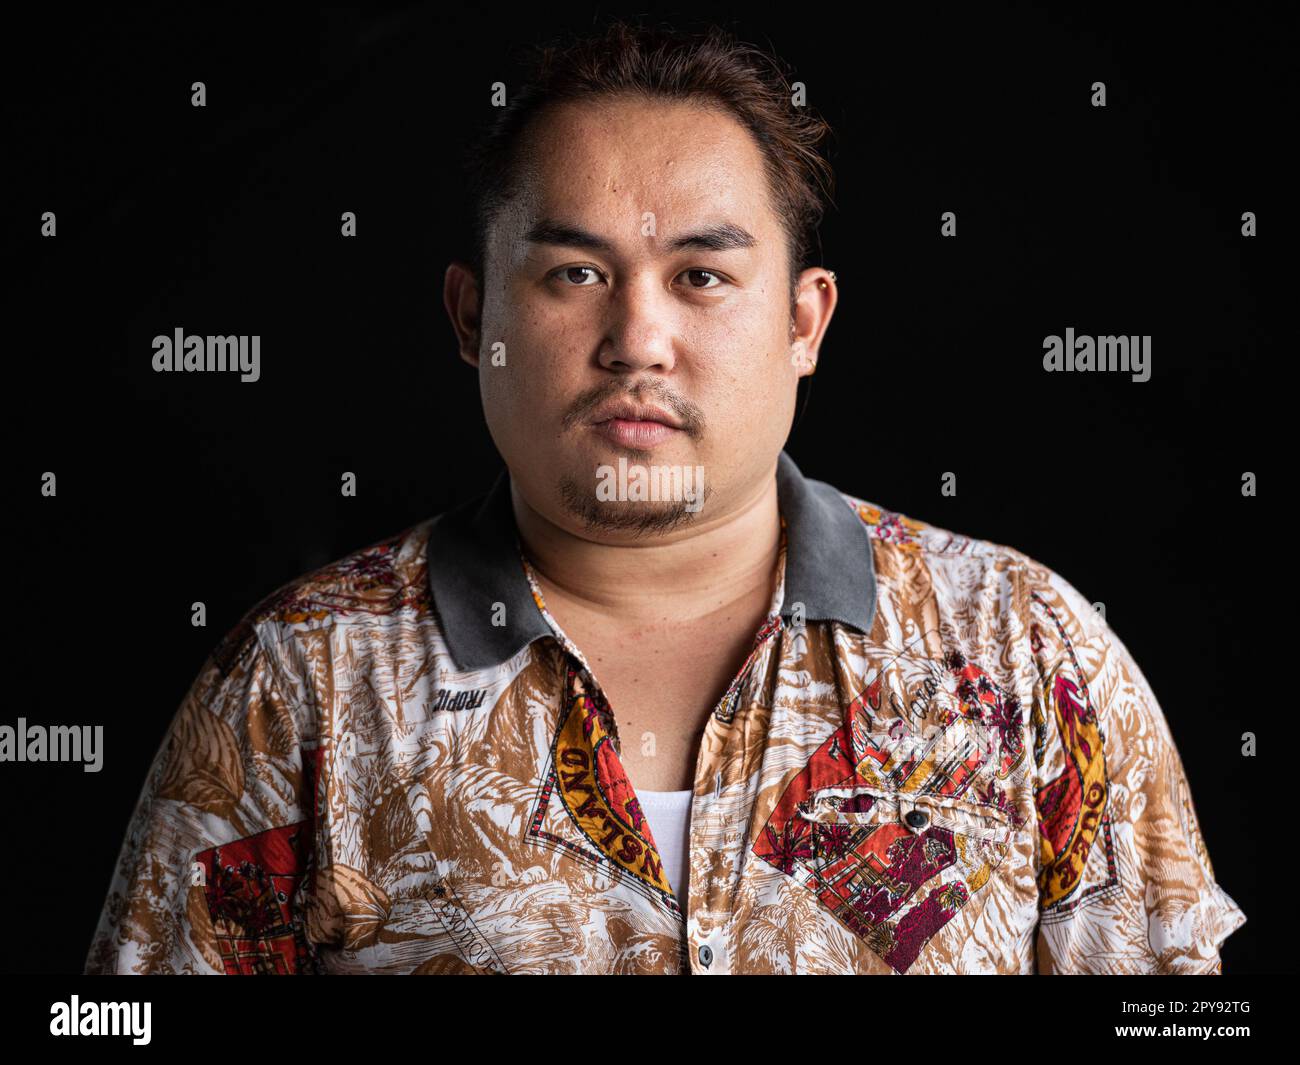 Porträt eines asiatischen Mannes, das vor einem horizontalen Bild mit schwarzem Hintergrund in die Kamera schaut Stockfoto